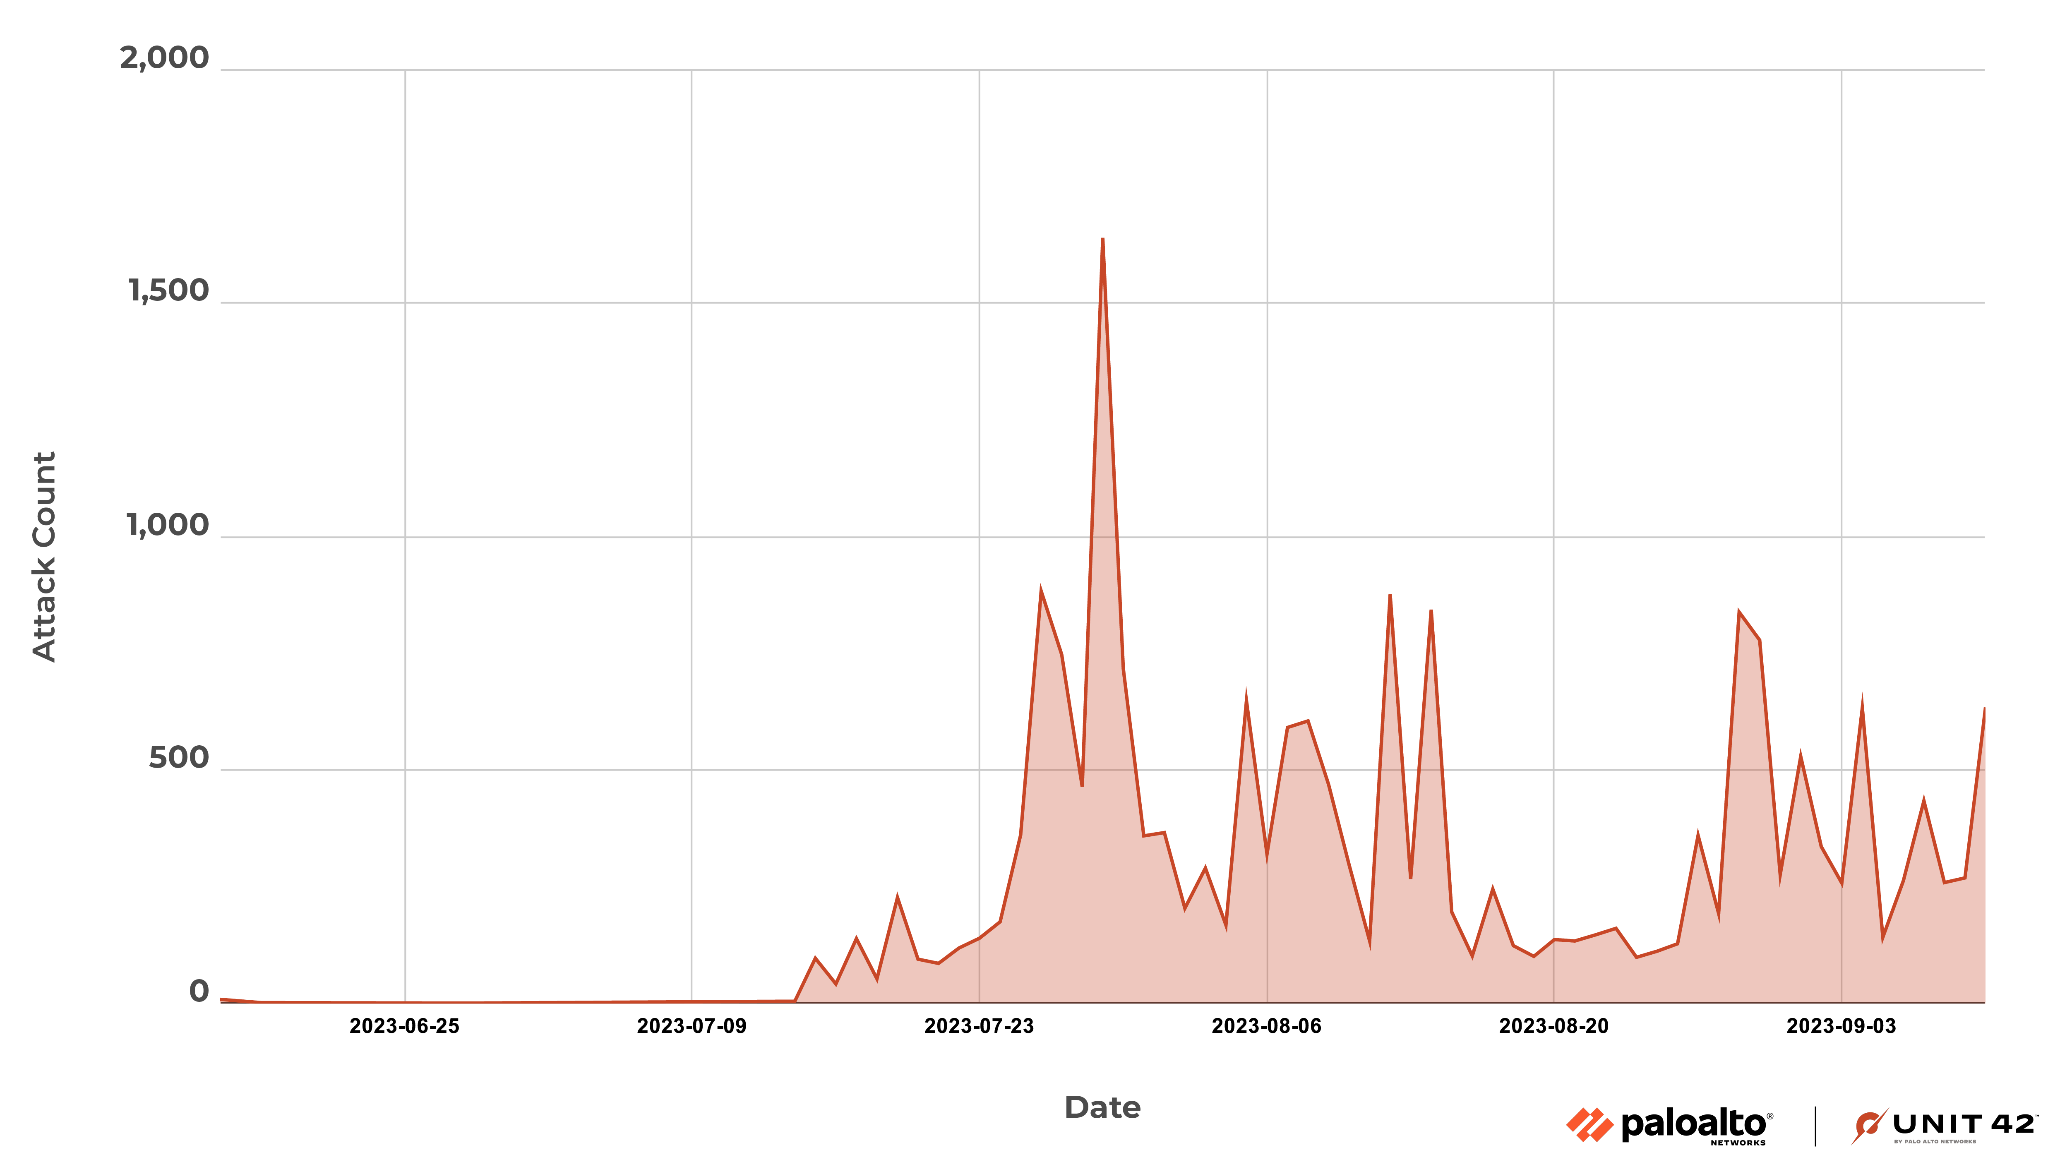 画像 2 は、MOVEit 脆弱性のエクスプロイトの傾向グラフです。ここには攻撃数を表示しています。グラフには 2023 年 6 月 25 日から 2023 年 9 月 3 日までの日付が振られています。攻撃のピークは 7 月です。 